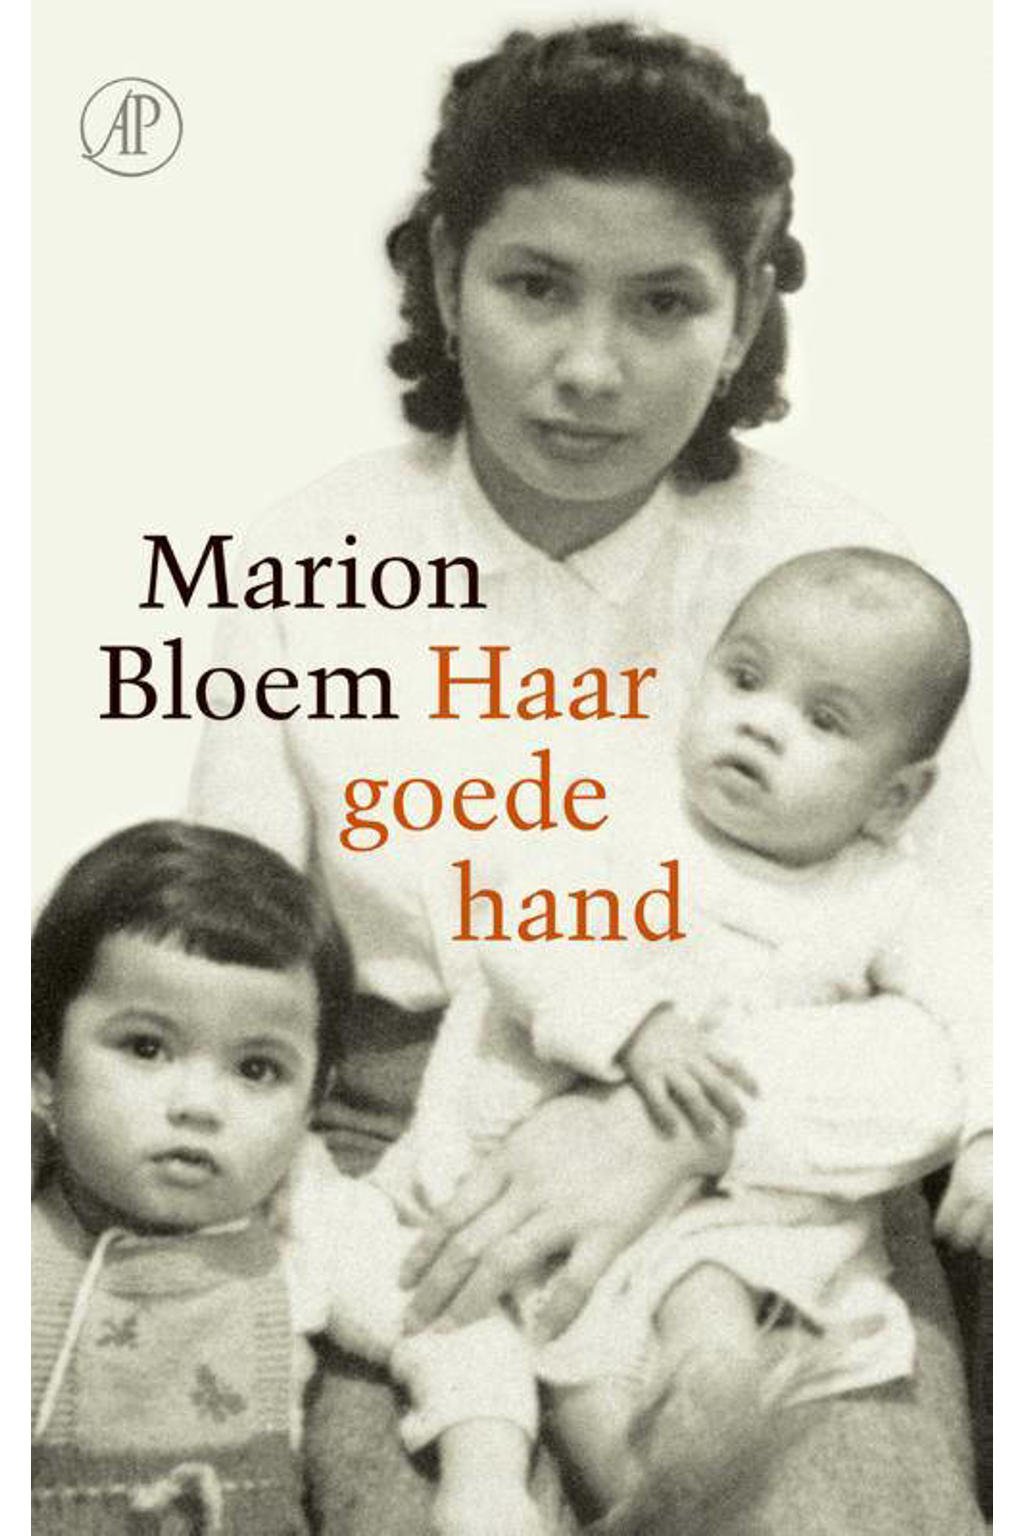 Haar goede hand - Marion Bloem